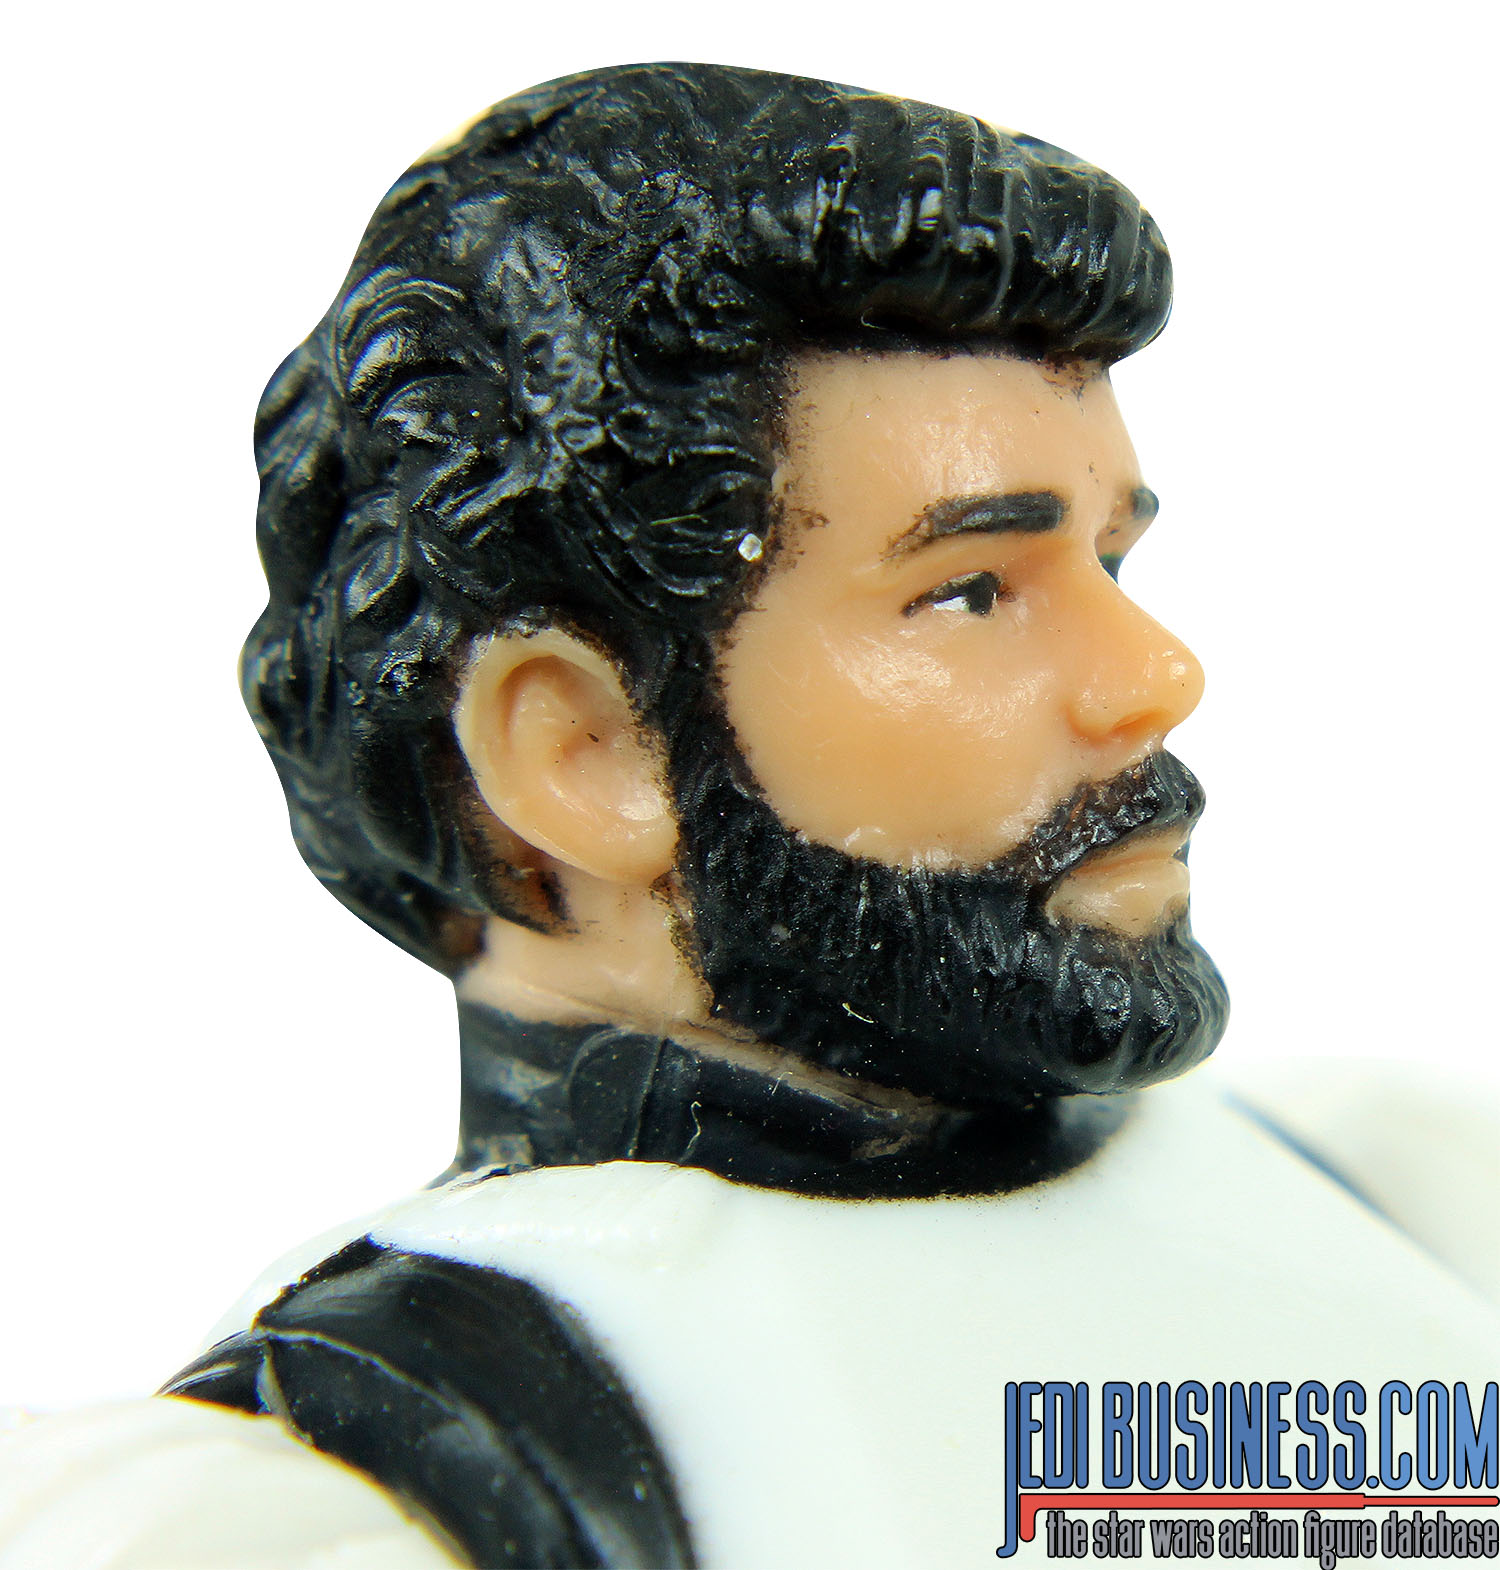 George Lucas In Stormtrooper Disguise